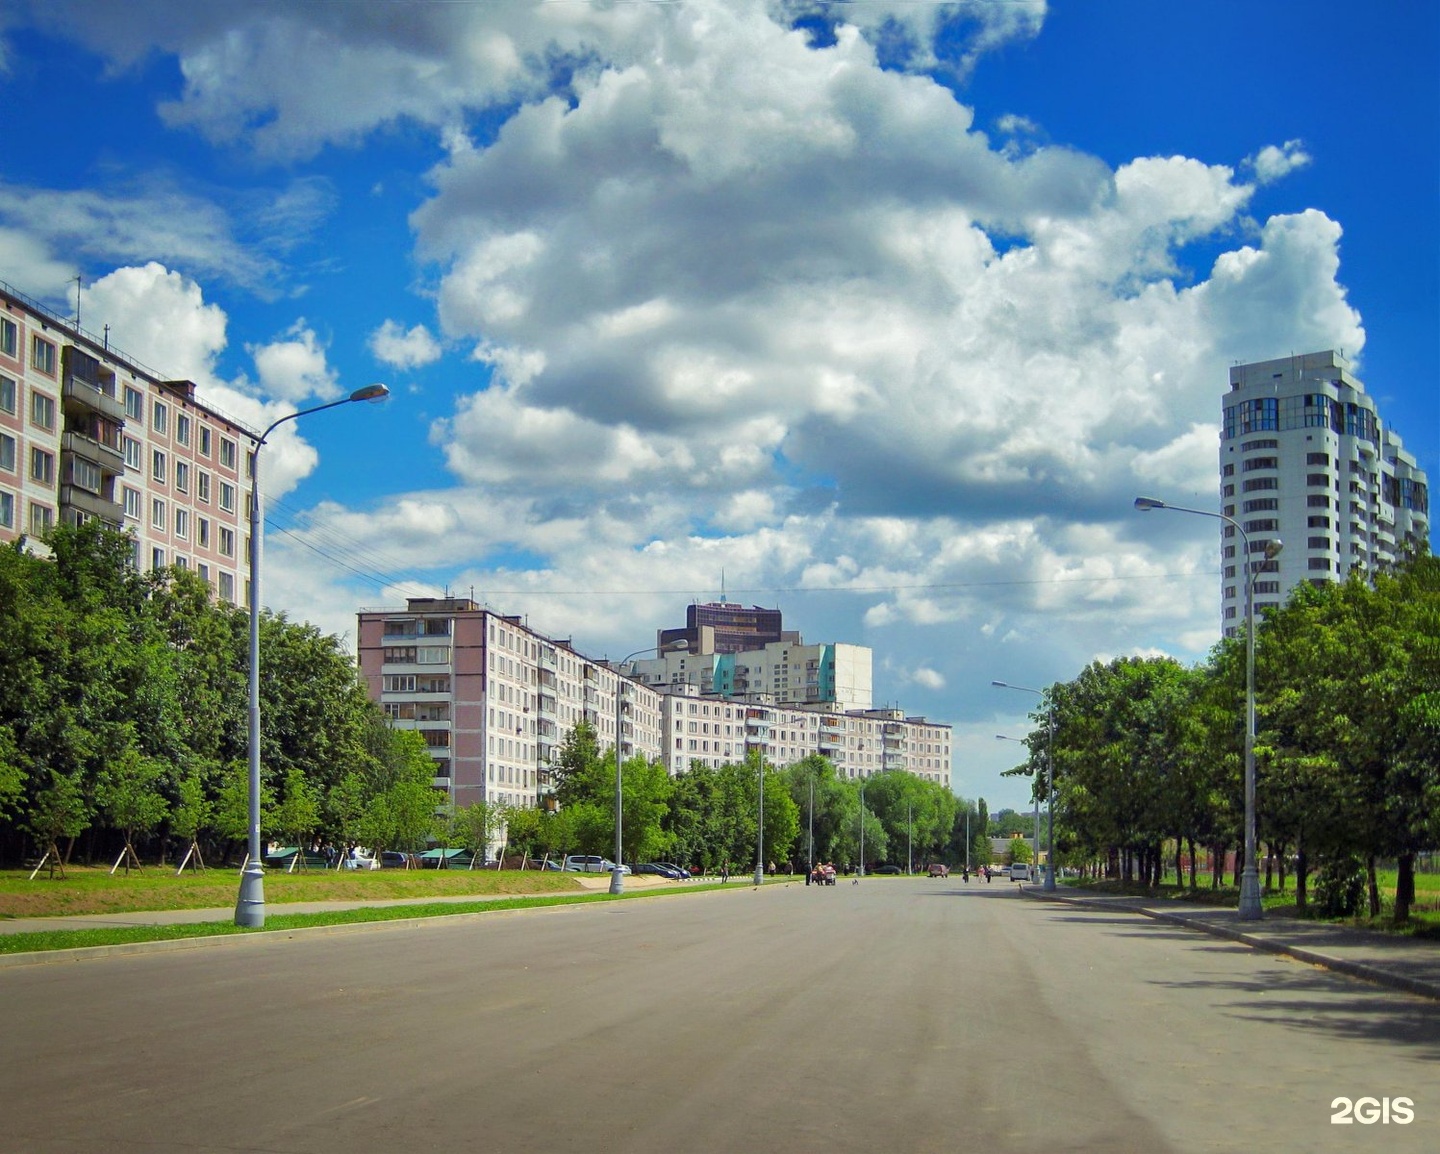 Нагорная улица в москве